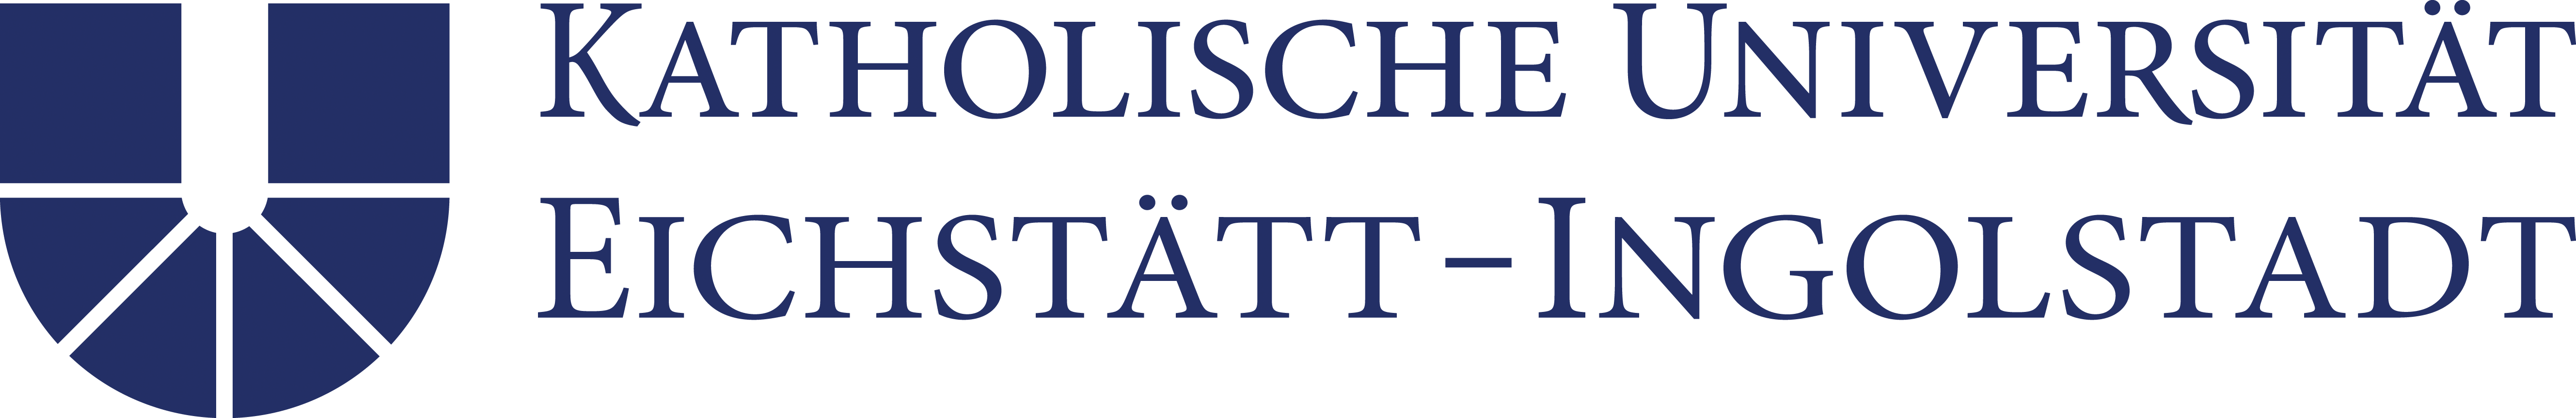 Katholische Universität Eichstätt-Ingolstadt